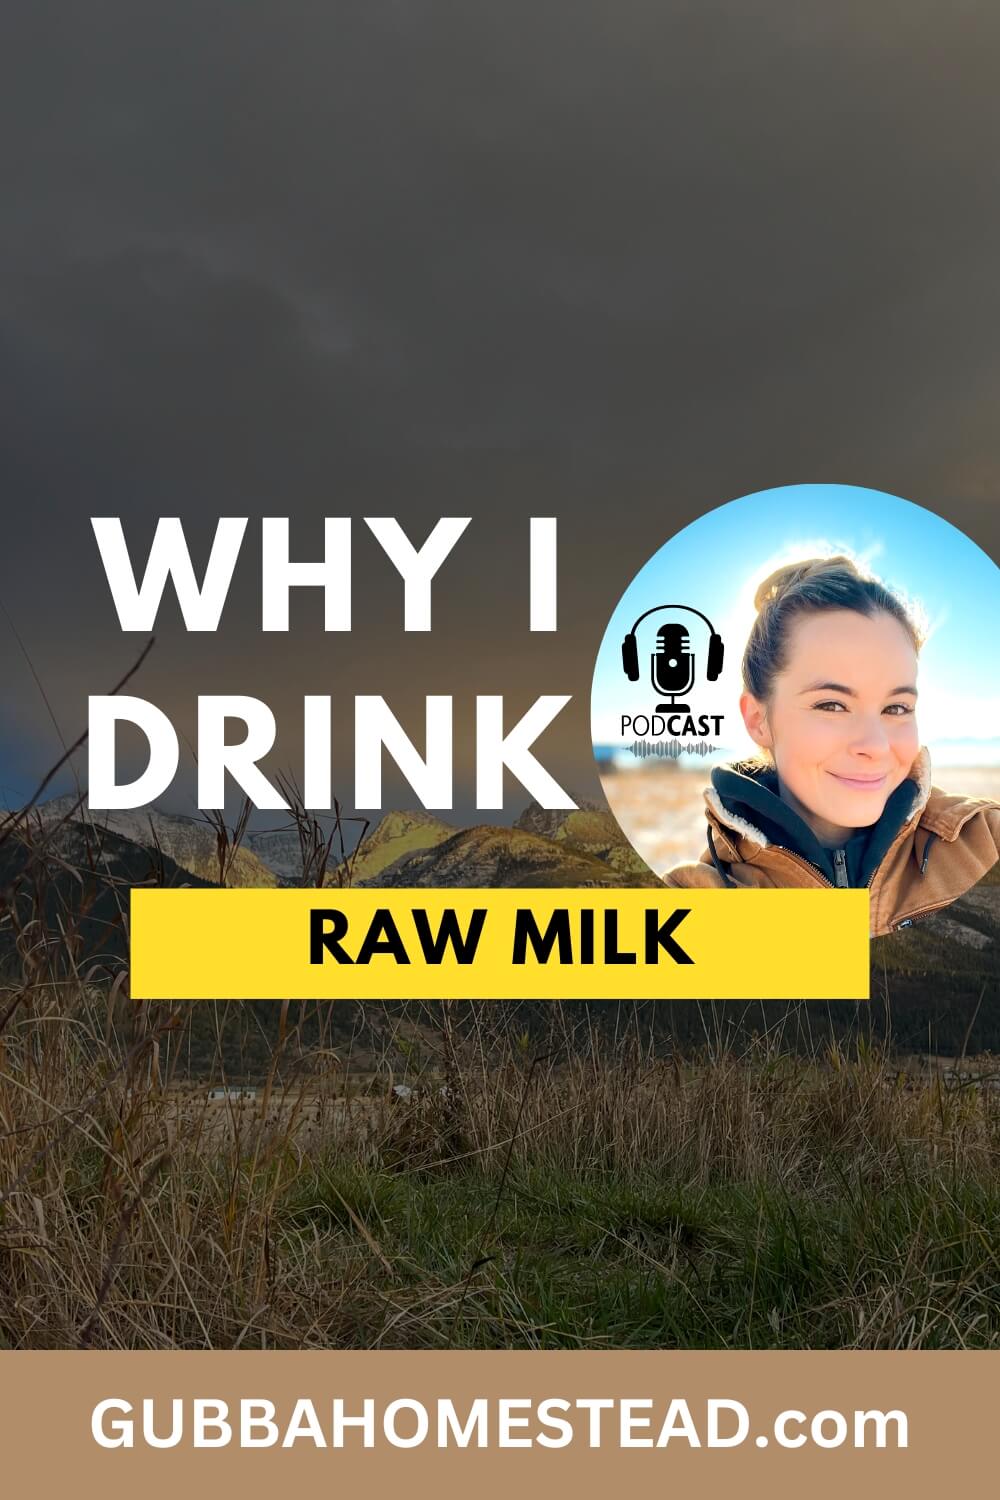 Why I Drink Raw Milk